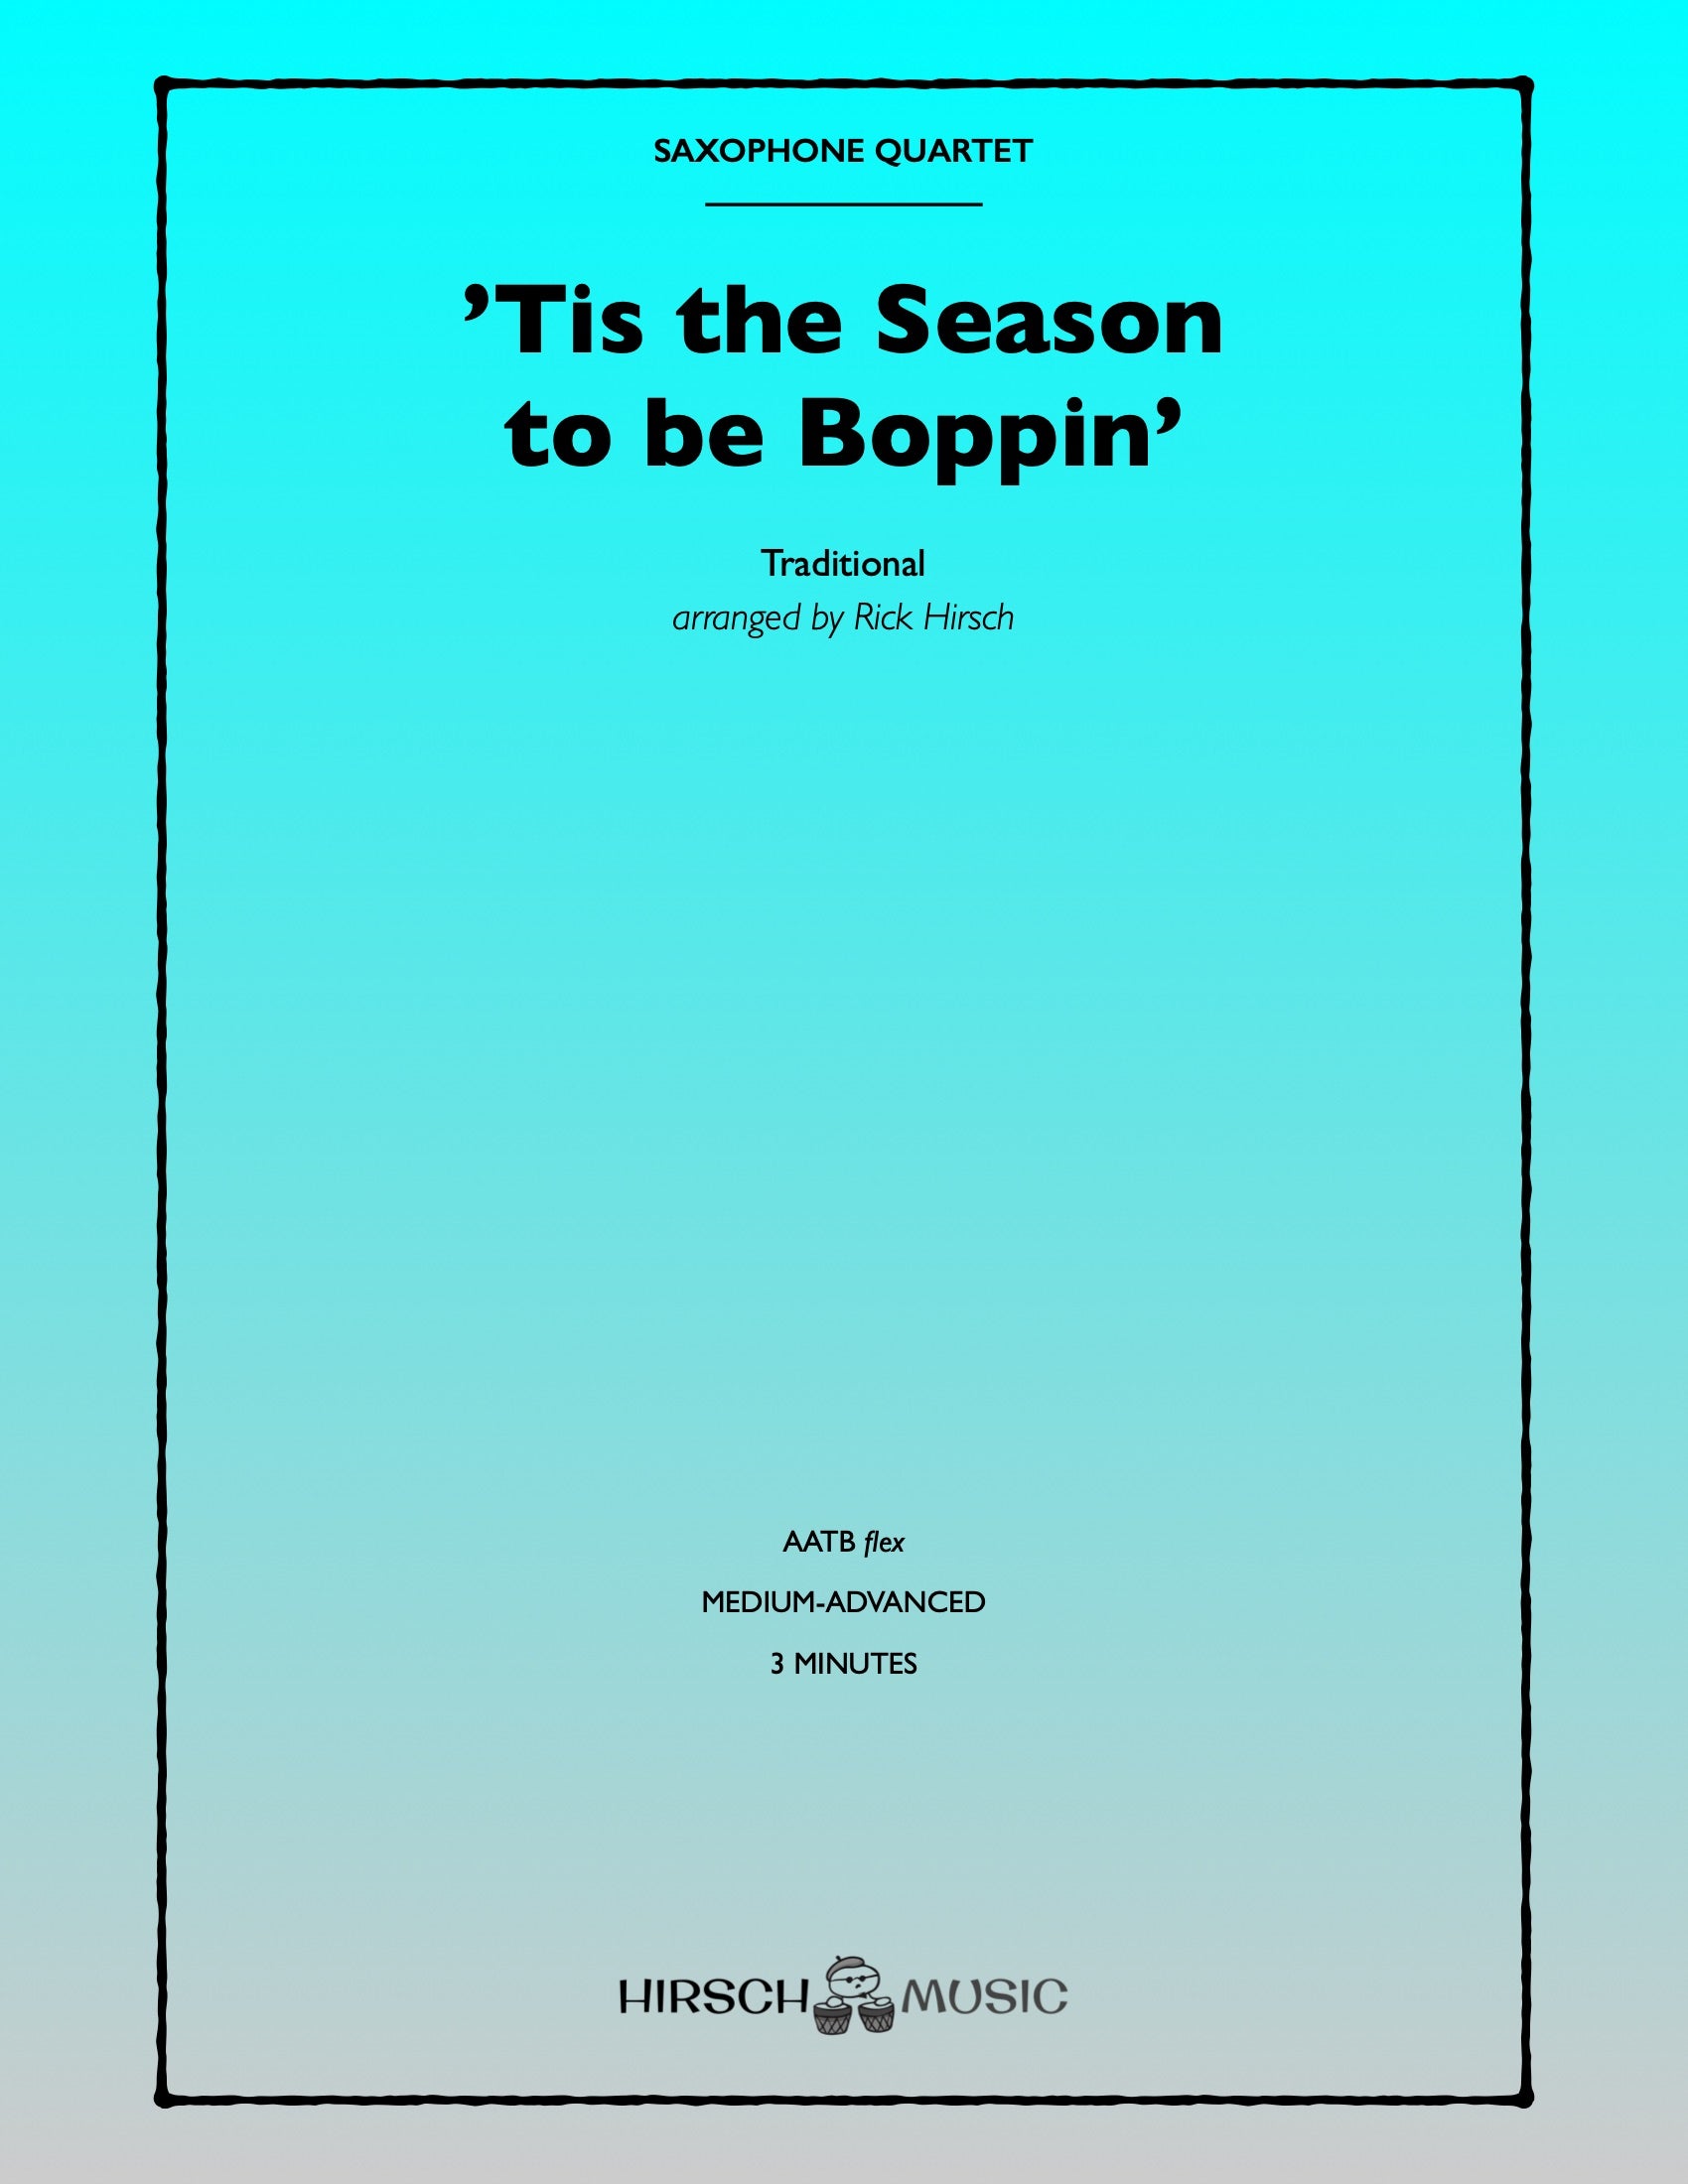 'Tis the Season to be Boppin'